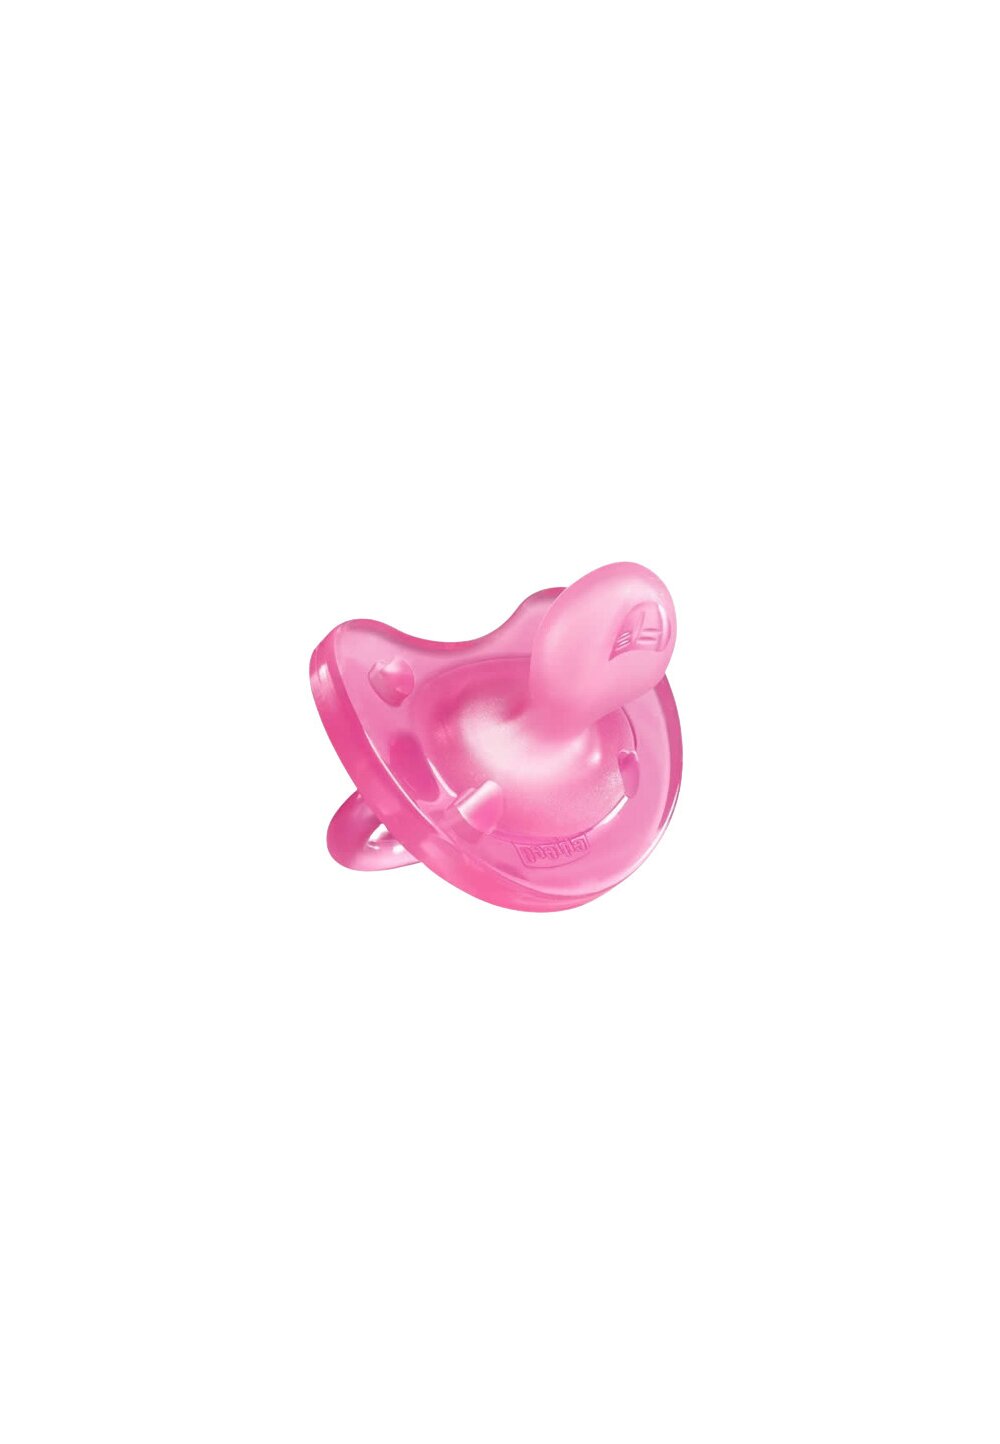 Suzeta Chicco Soft, din silicon, roz, 0-6 luni 0-6